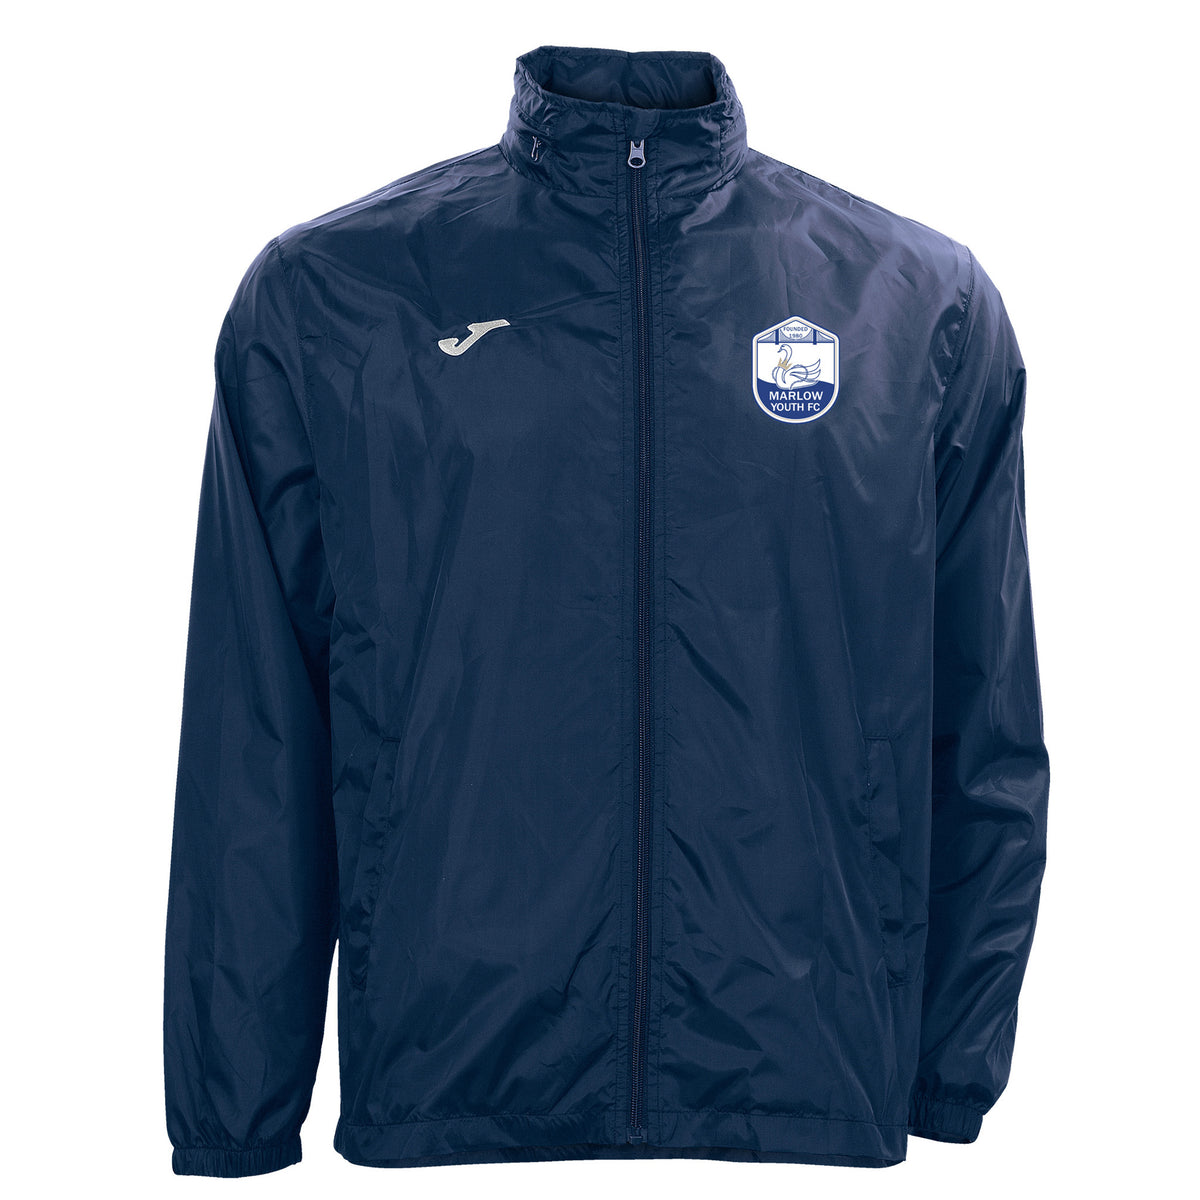 Marlow Youth FC Rain Jacket: Navy